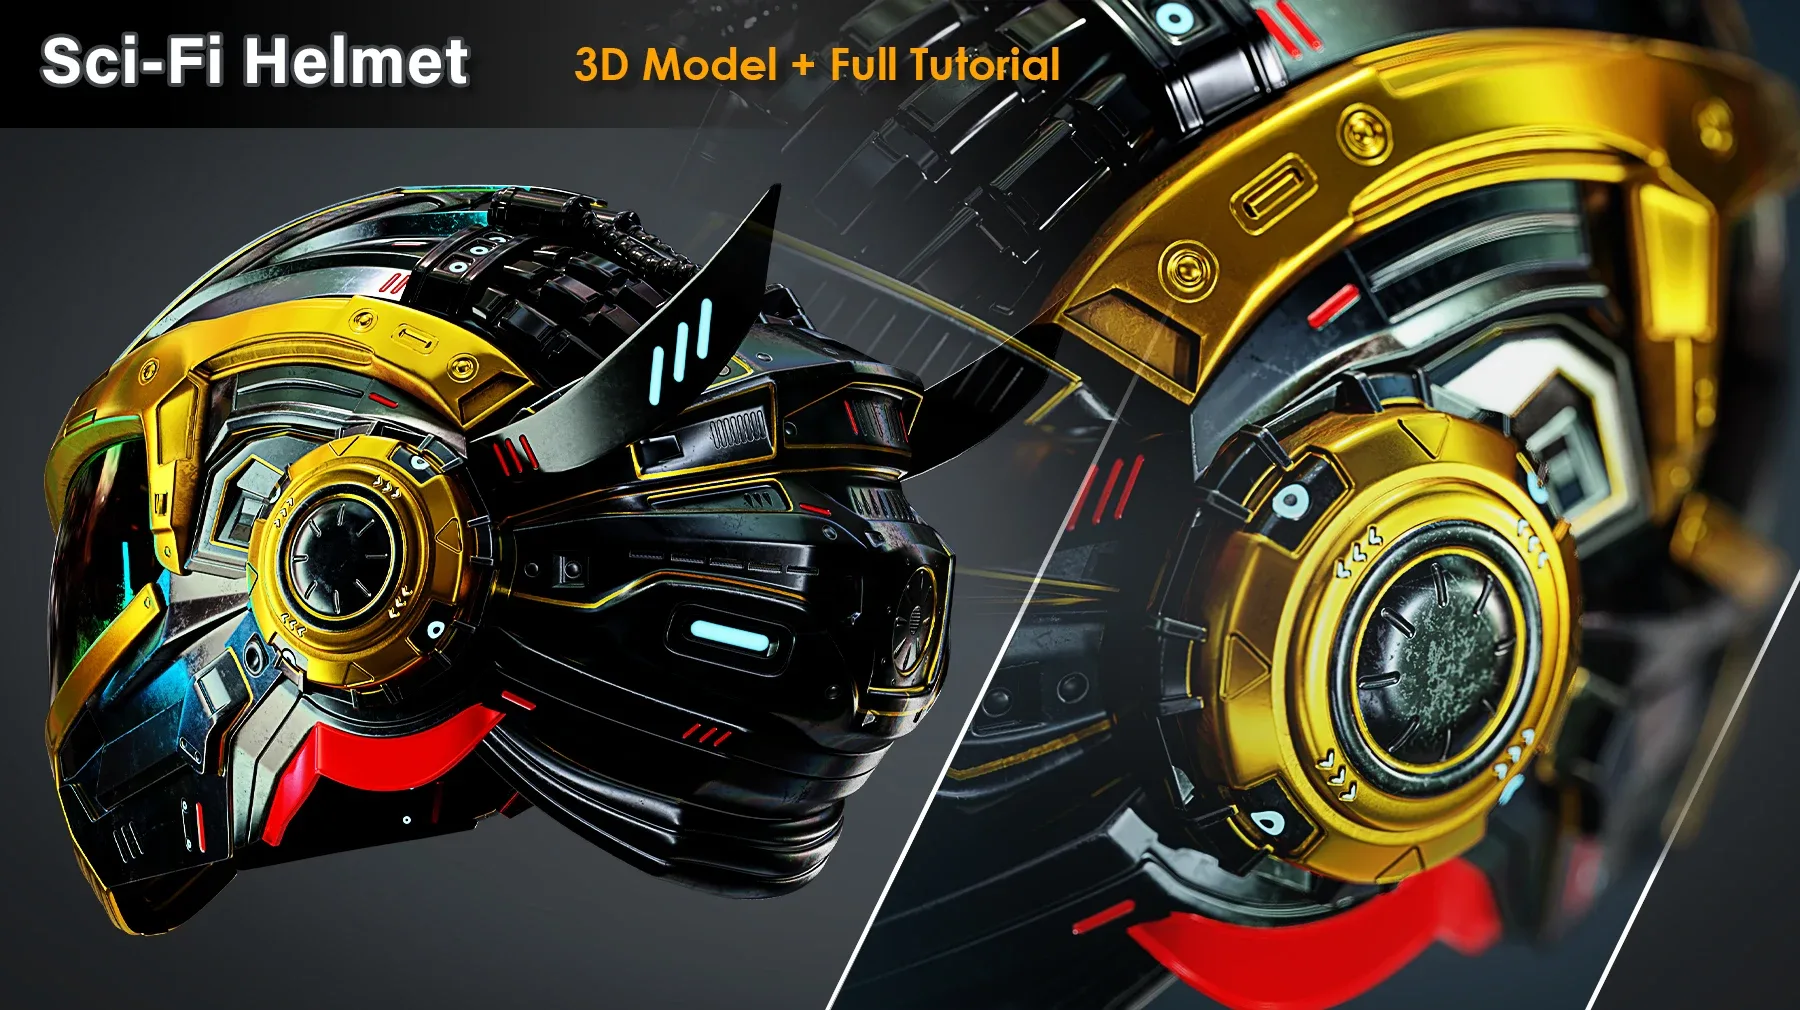 Sci-Fi Helmet / 3D Model+Full Tutorial